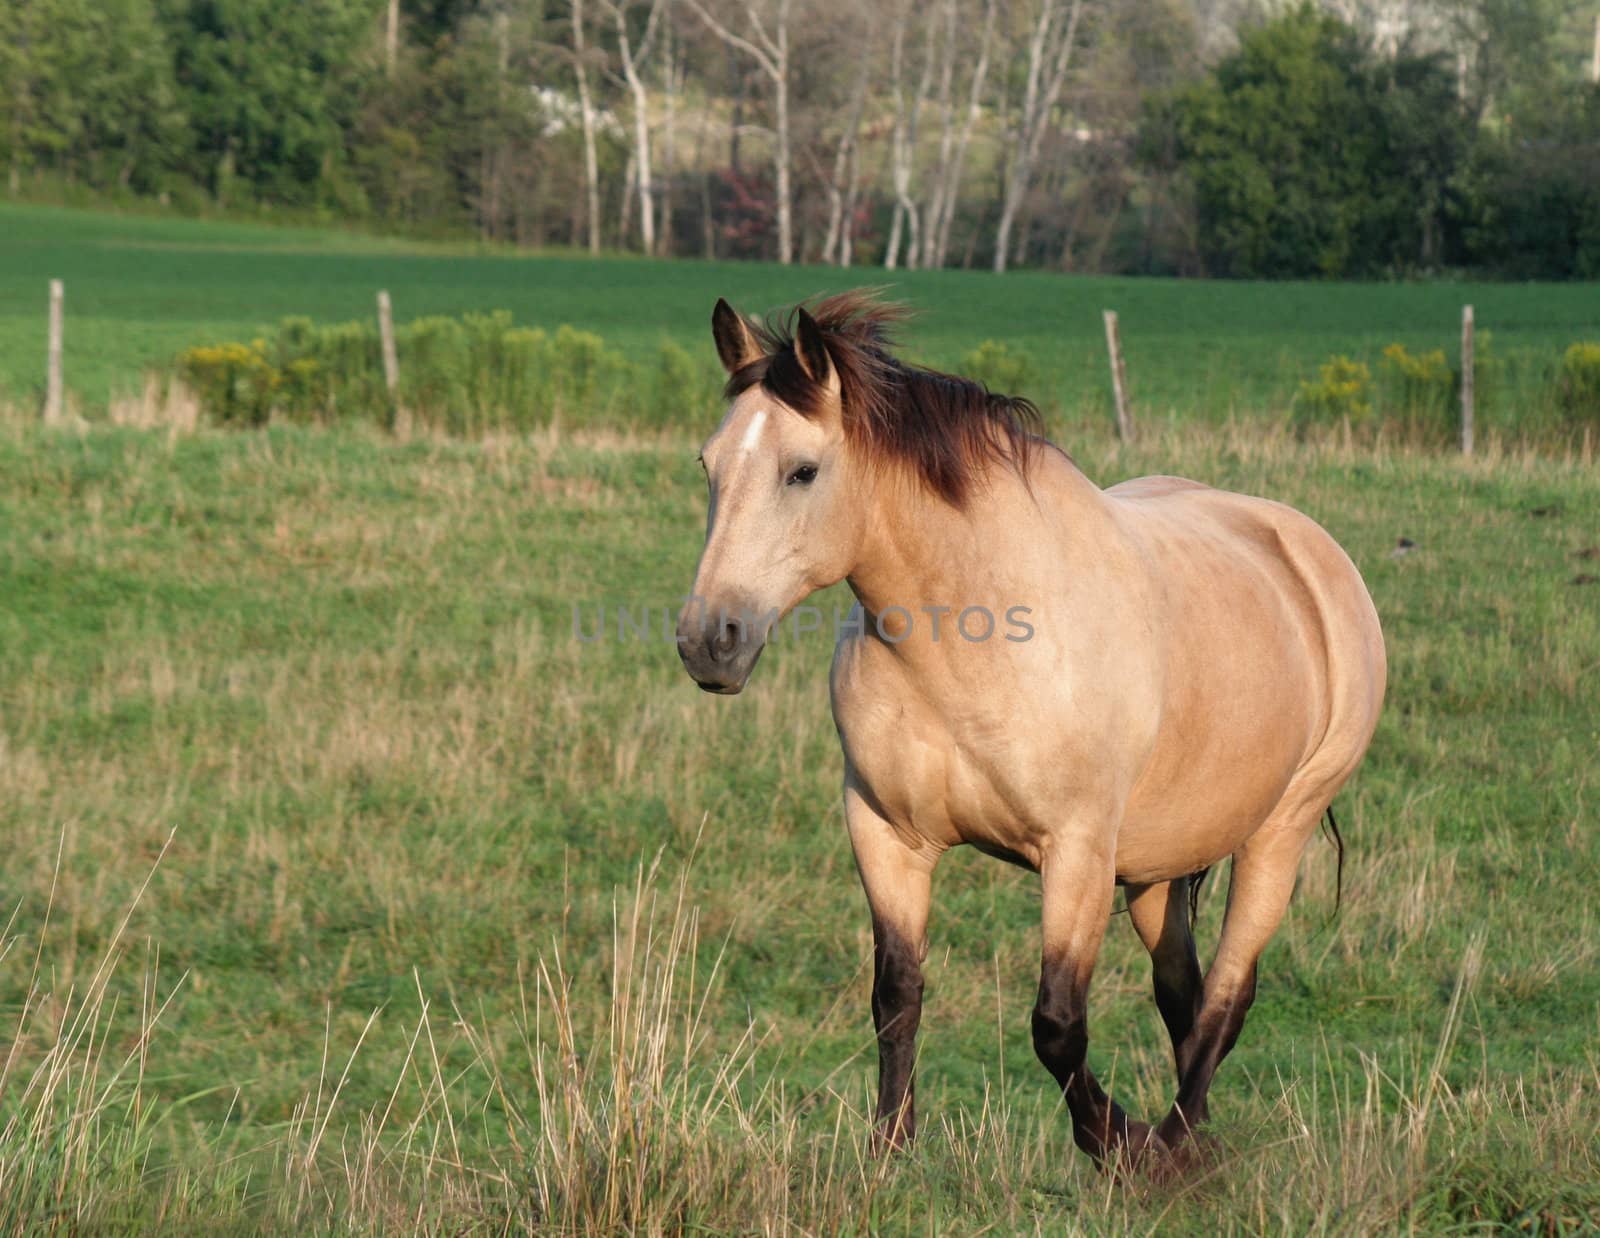 A buckskin horse strolls across a field.
